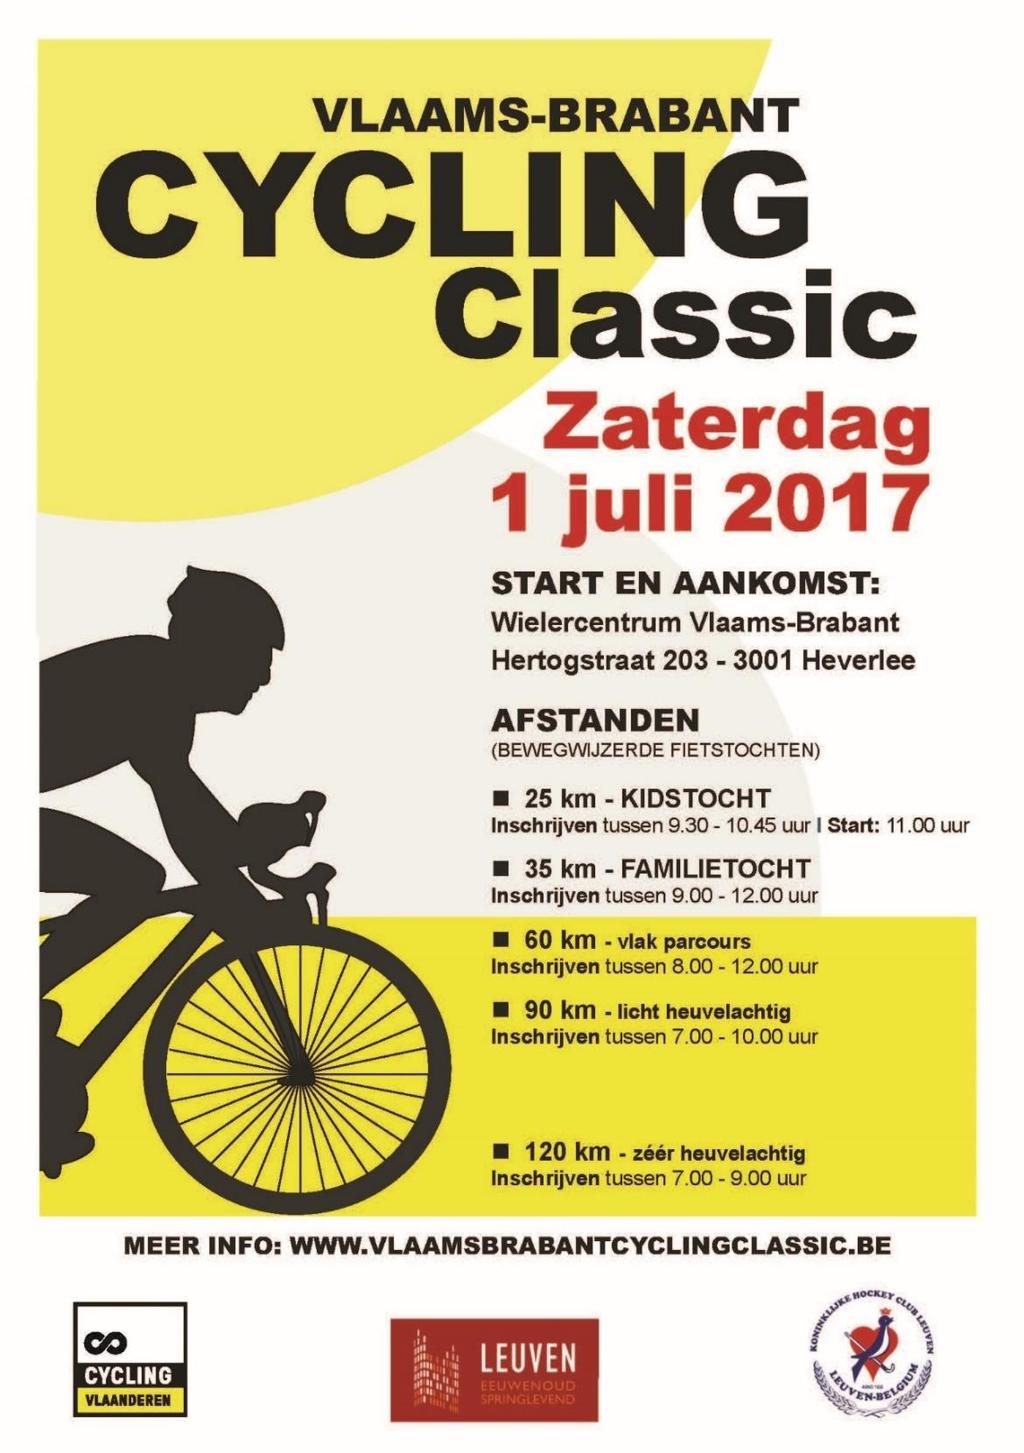 VLAAMS-BRABANT CYCLING CLASSIC ZATERDAG 1 JULI 2017 Heb je zin in een sportieve uitdaging of een gezellige rit?